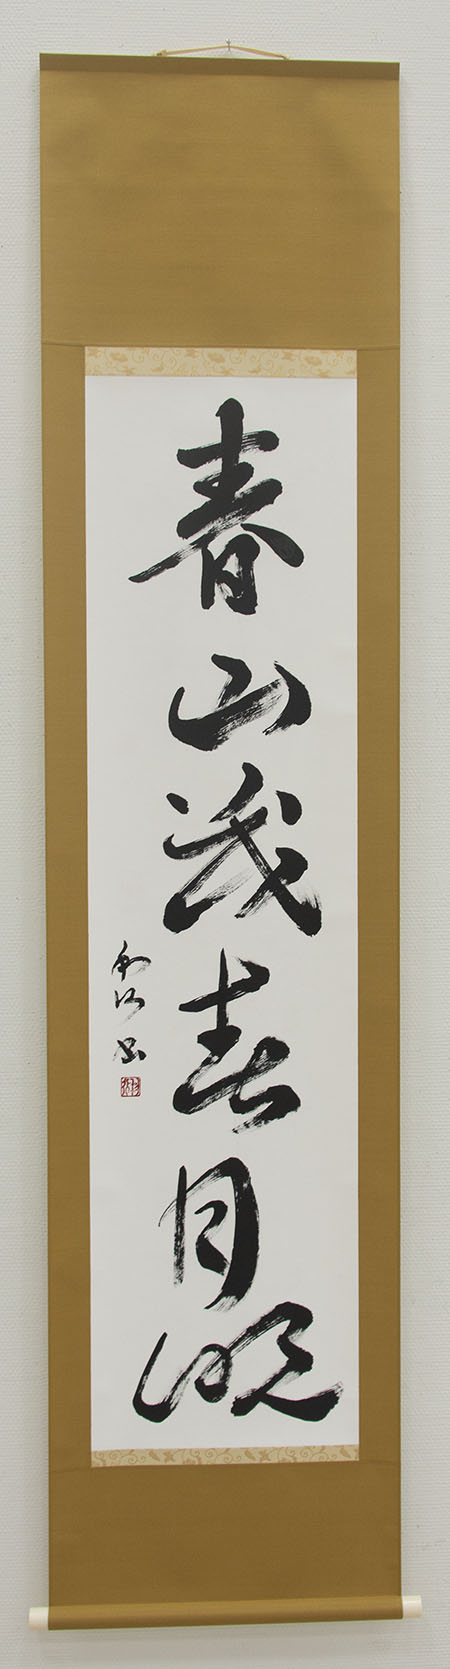 令和元年シルバー美術展の写真14